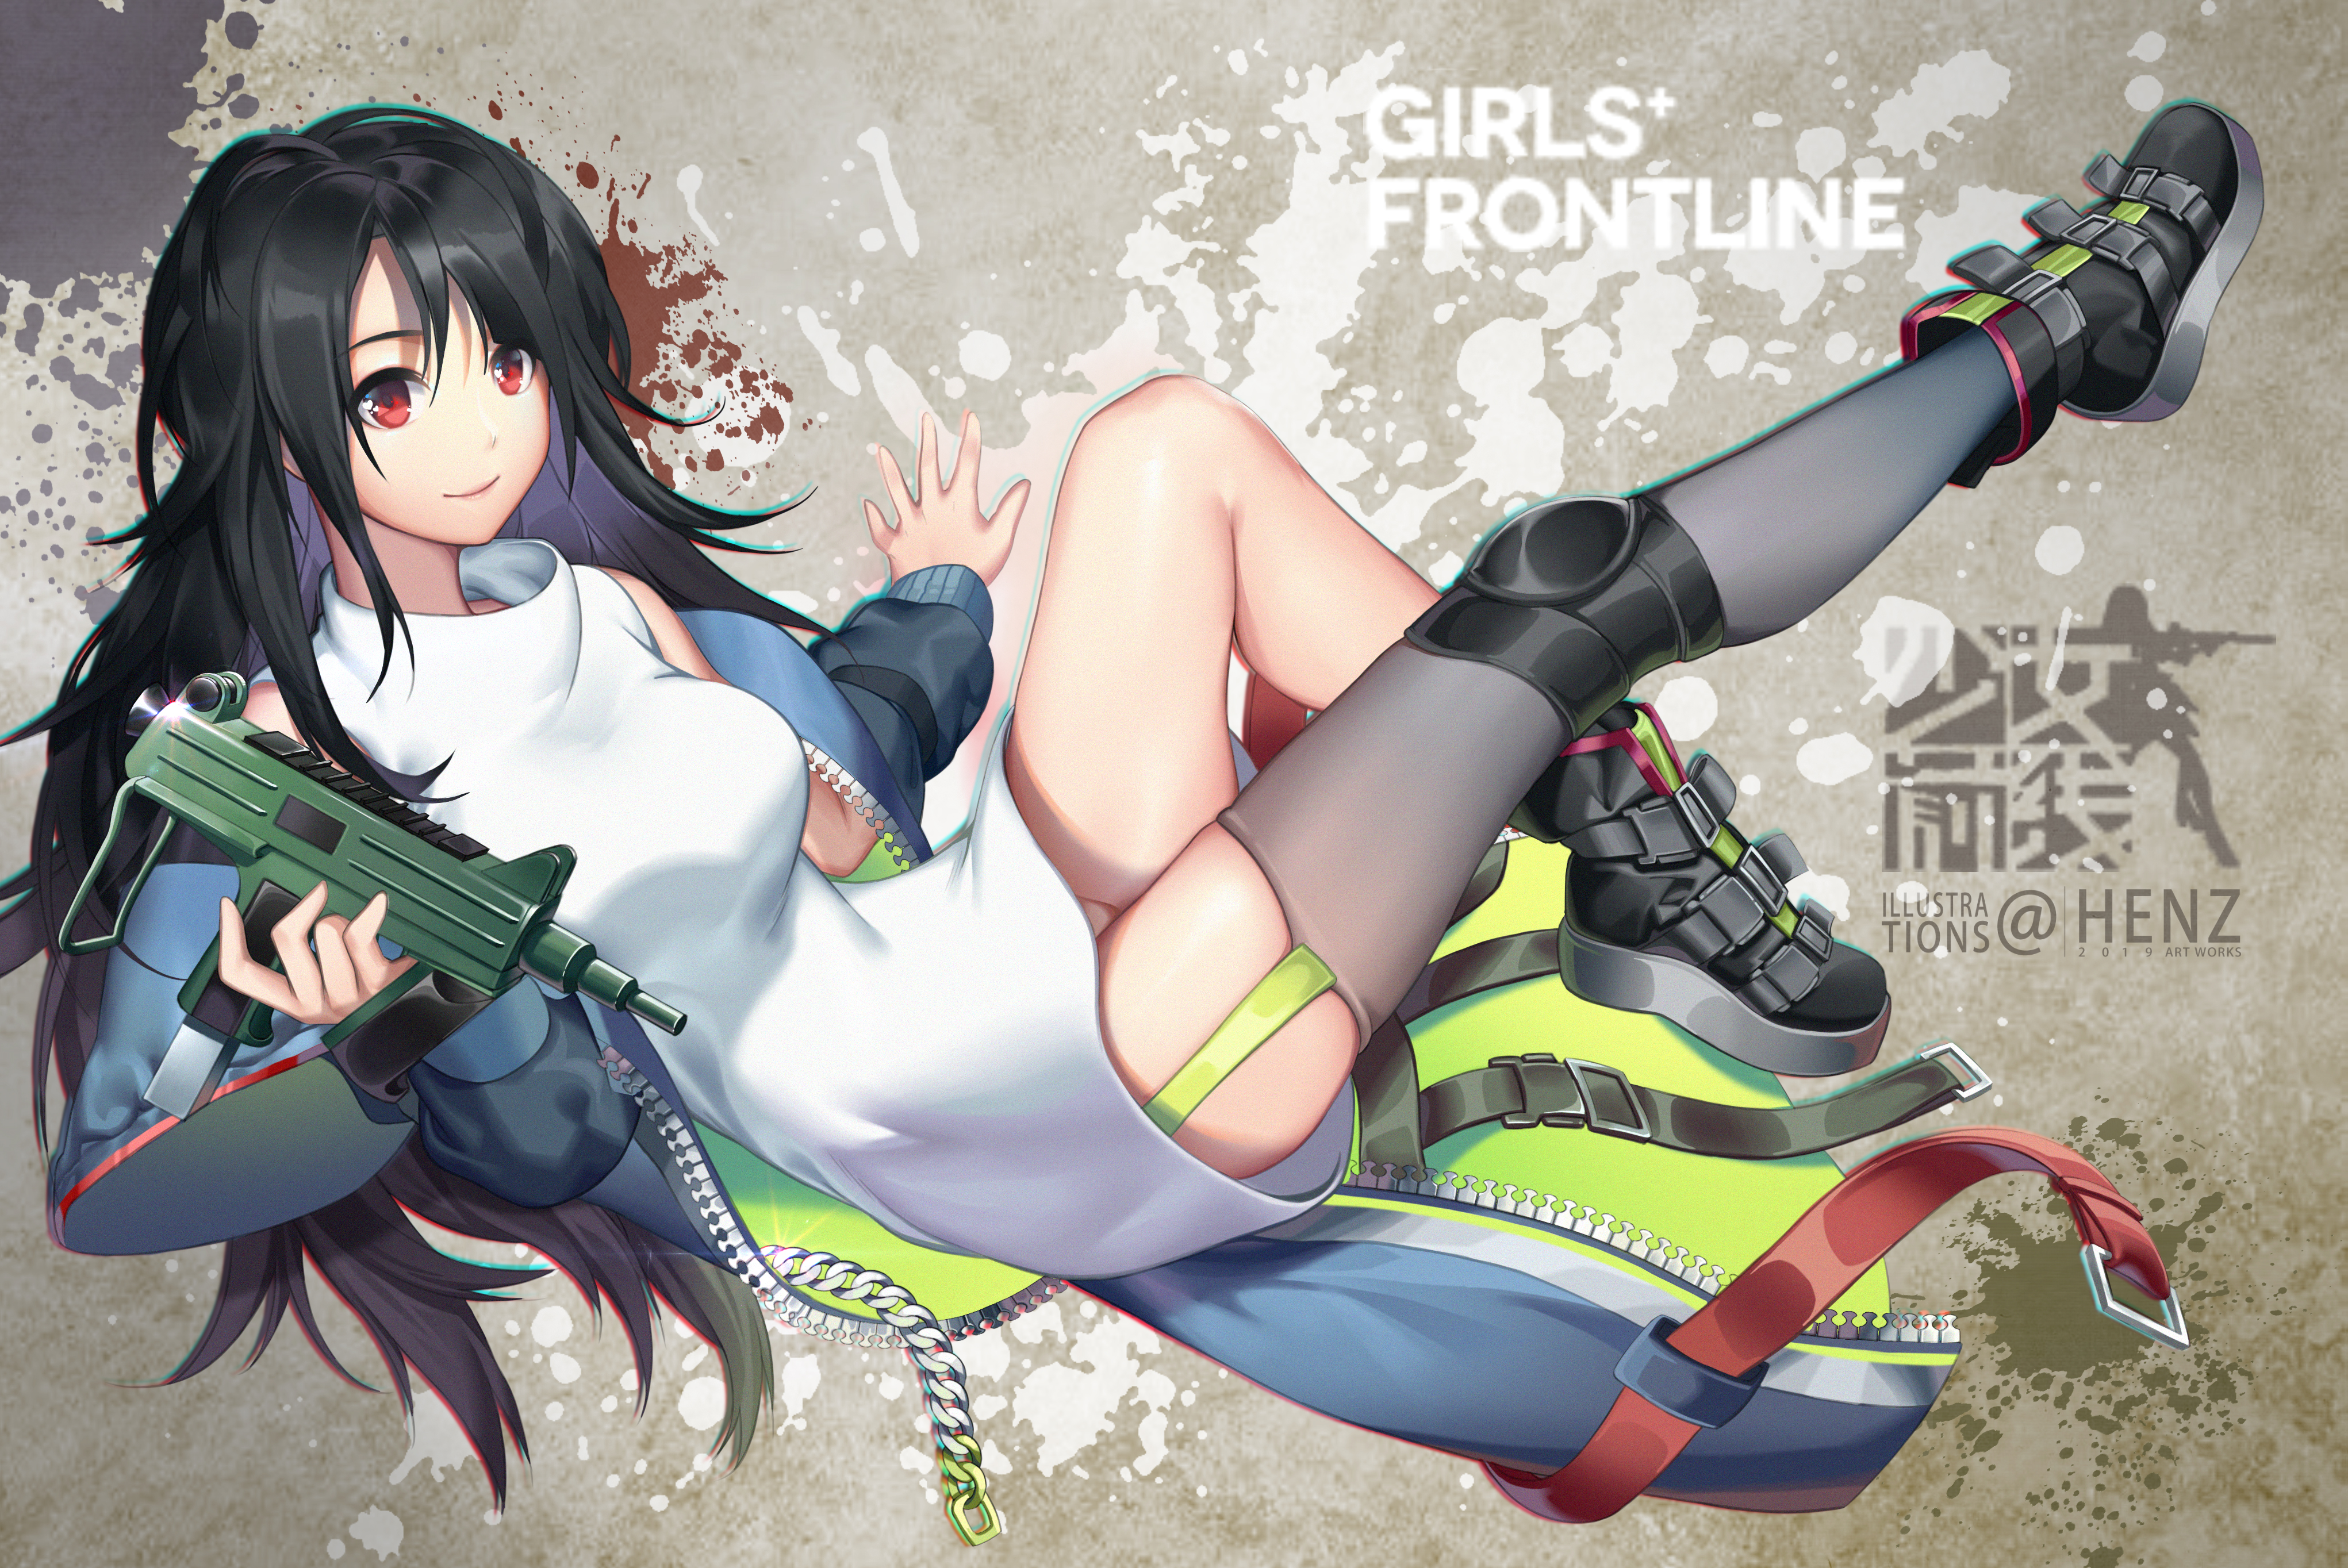 Artwork Thigh Highs Girls Frontline C MS Girls Frontline Anime Girls Henz Open Coat Dress Black Hair 4084x2728